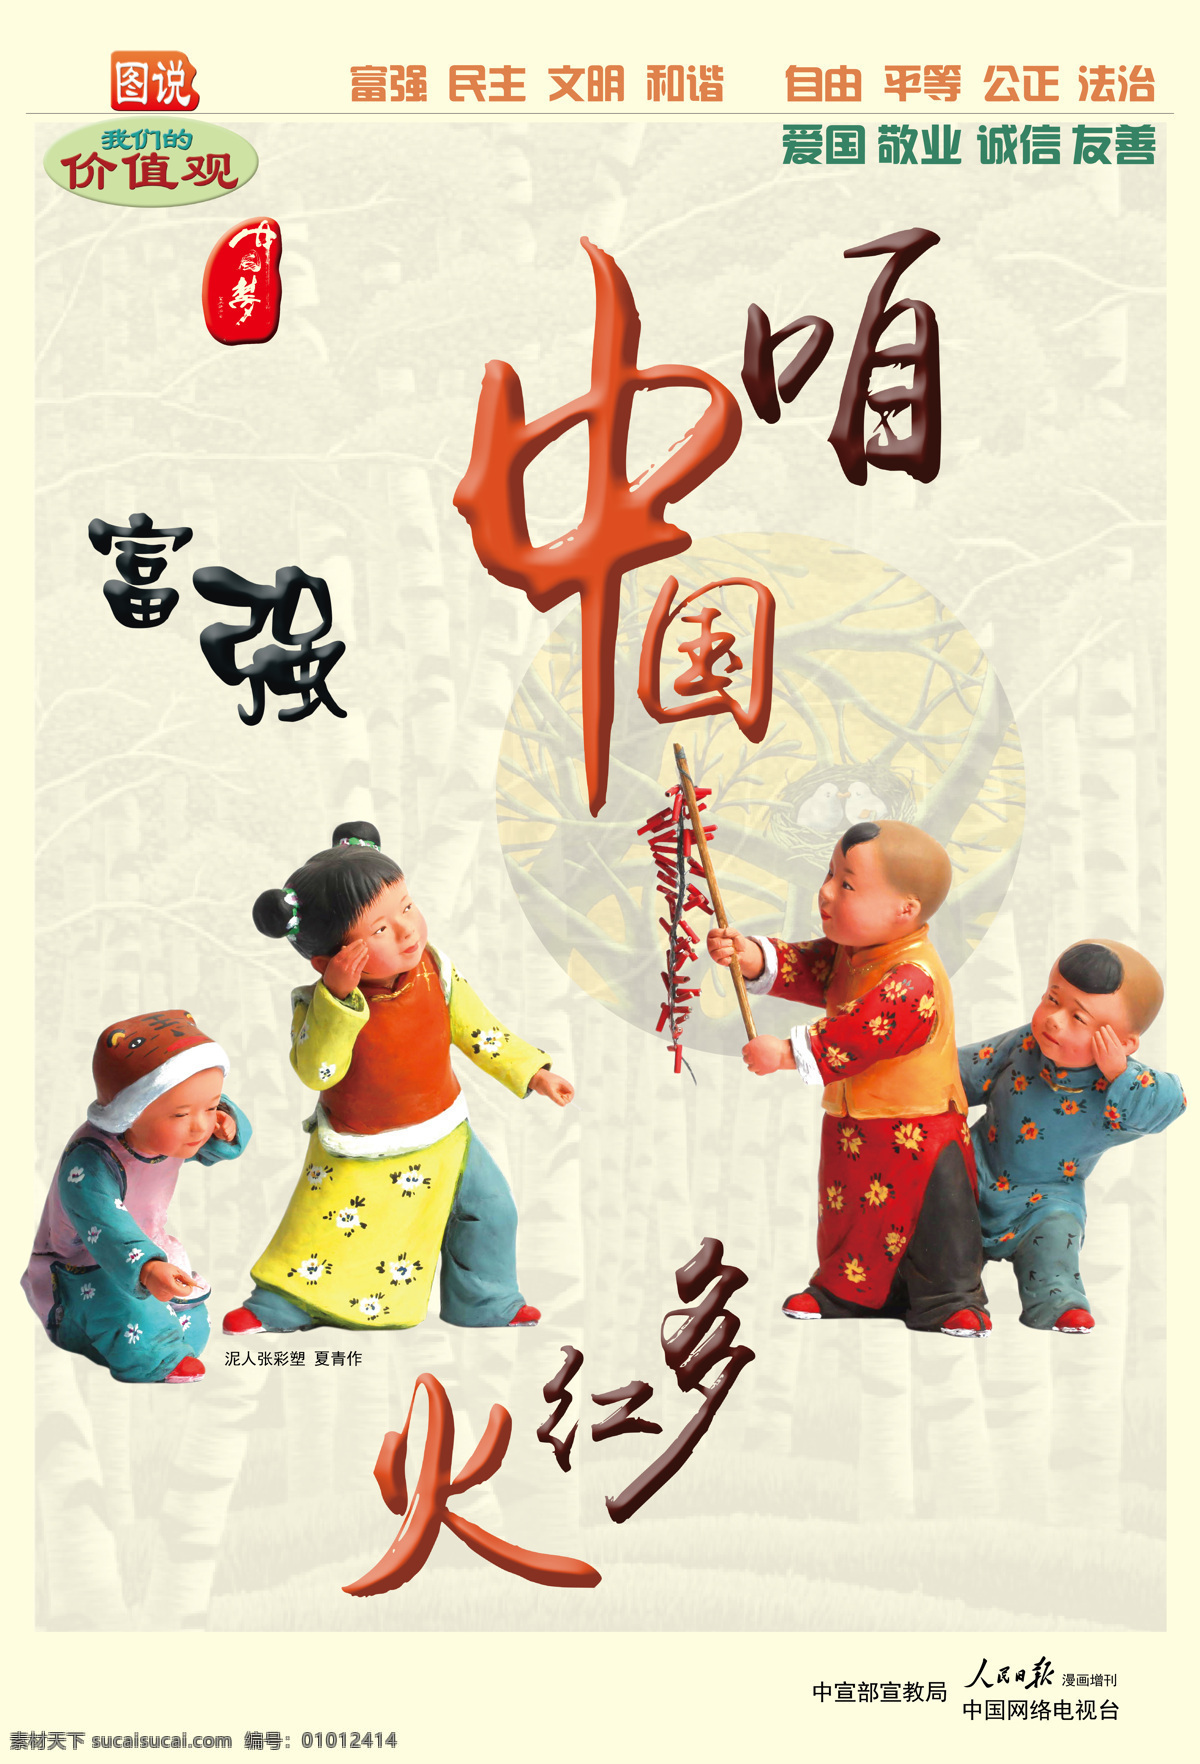 中国 富强 红火 公平 自由 图说 我们 价值观 民主 文化艺术